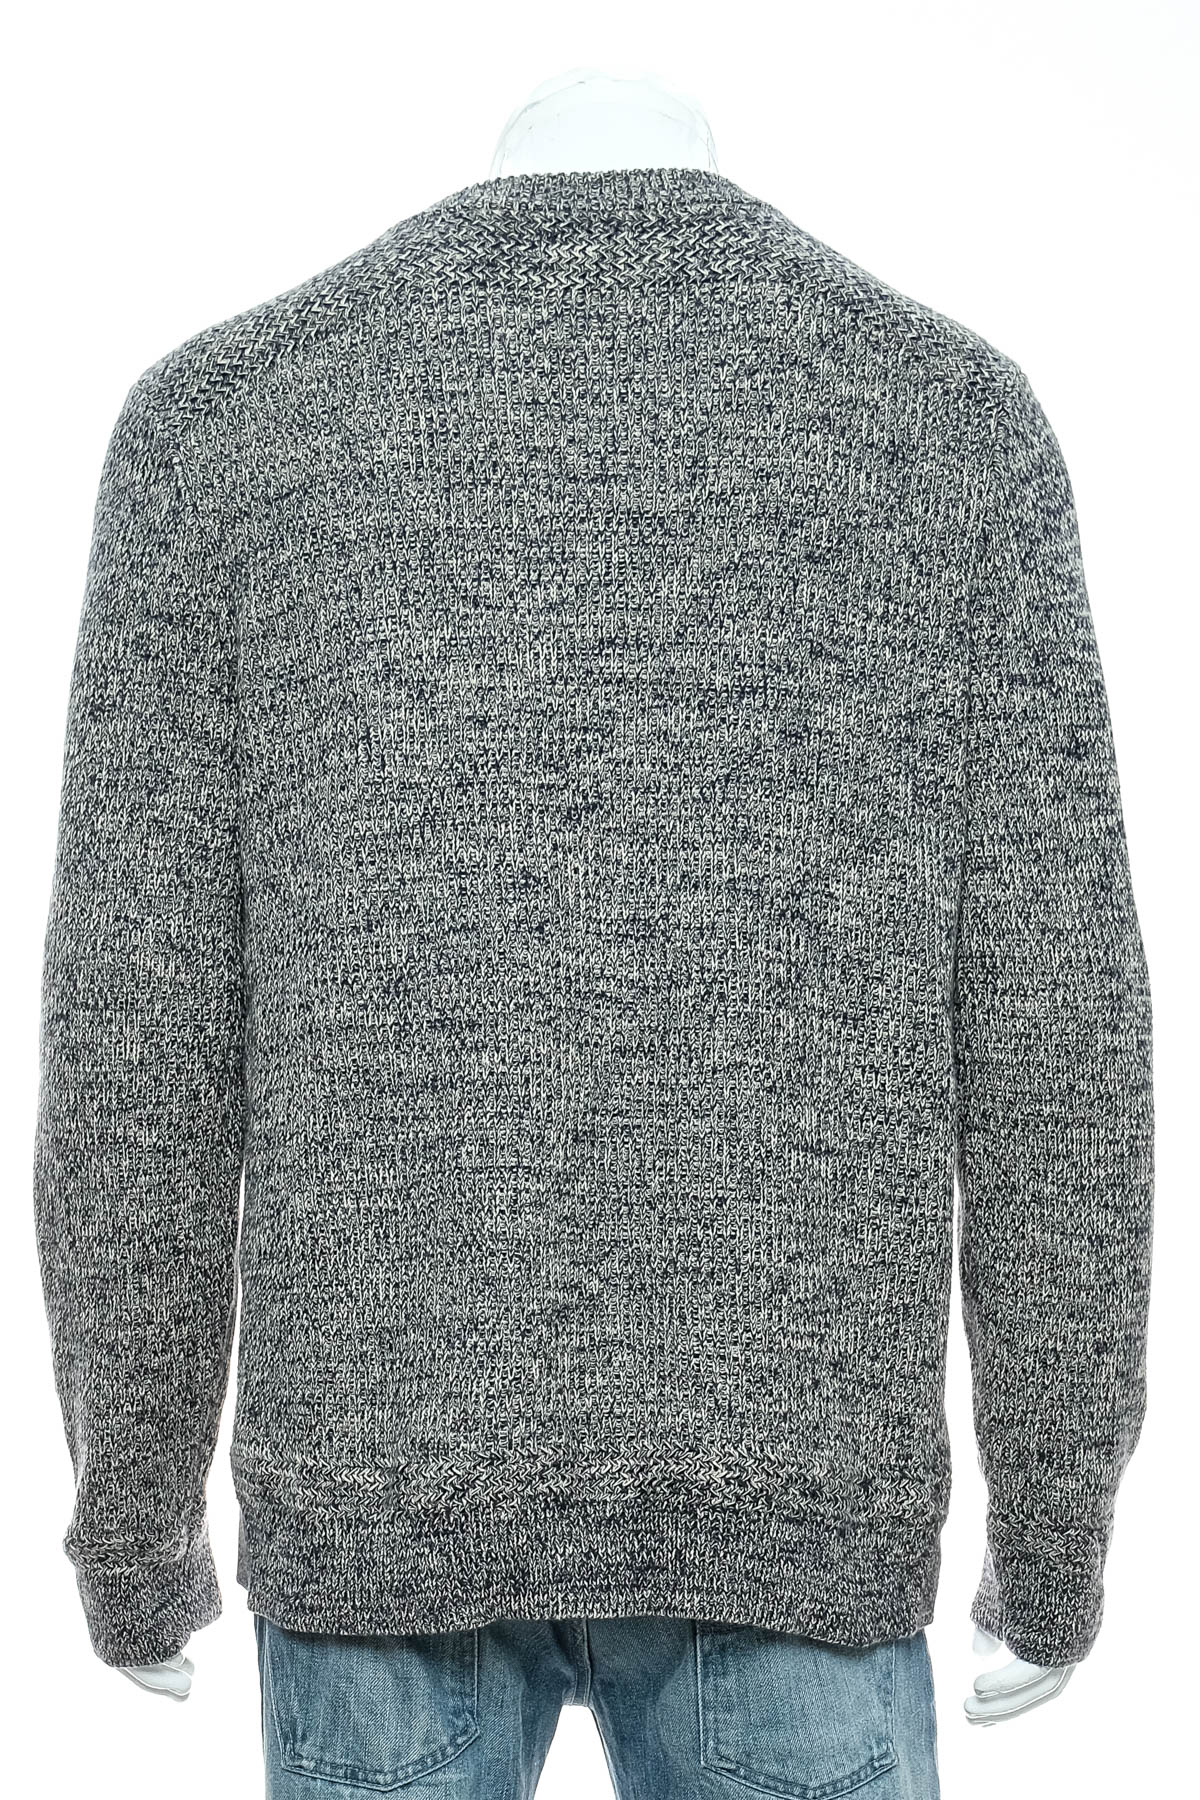 Men's sweater - BEAN SIGNATURE - 1